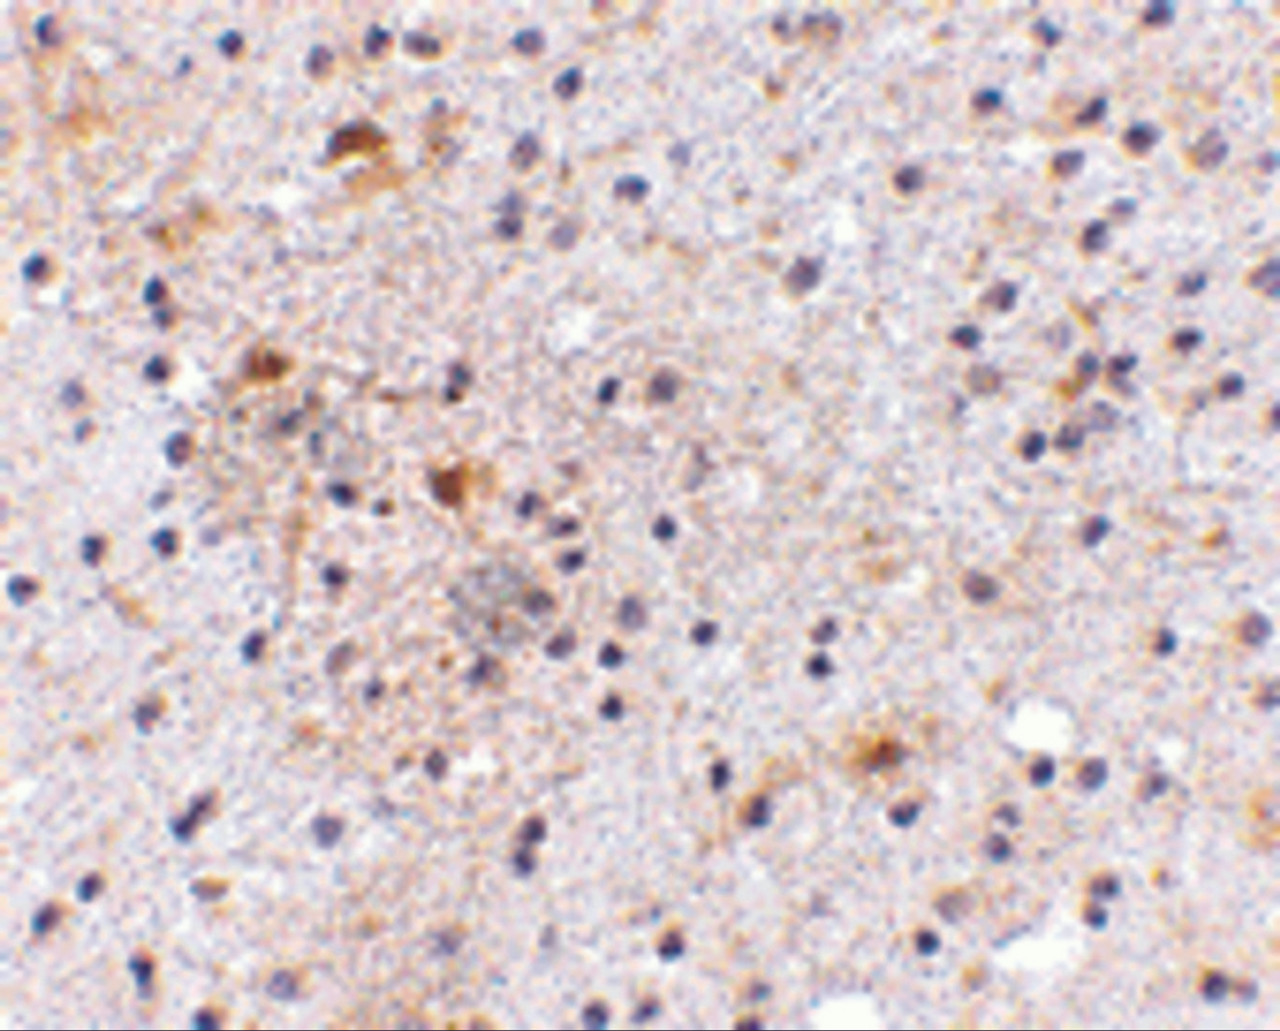 Immunohistochemistry of CAPS1 in human brain with CAPS1 antibody at 5 ug/mL.